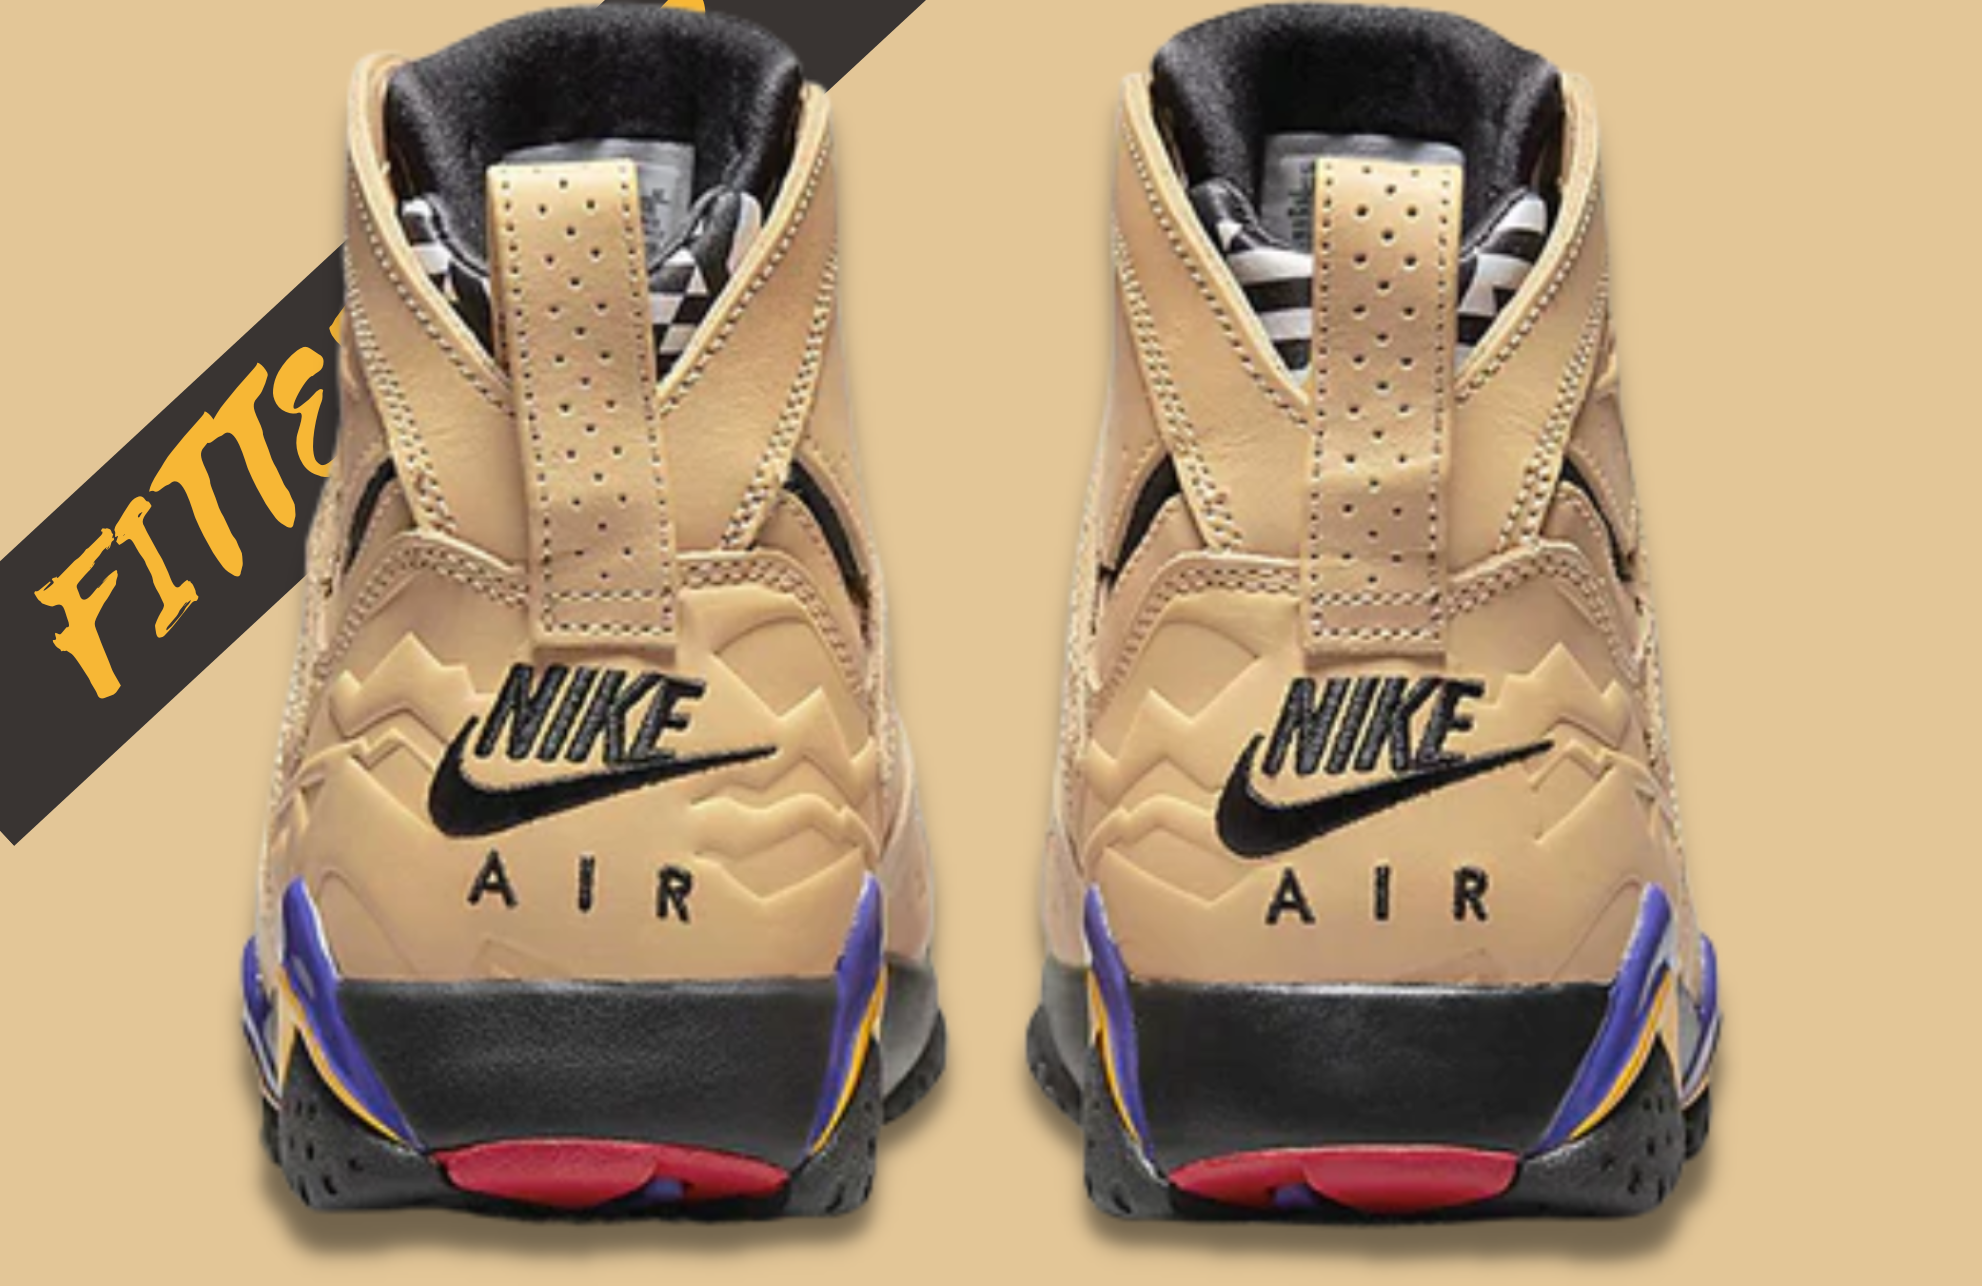 Nike Air Jordan 7 Retro "Afrobeats"